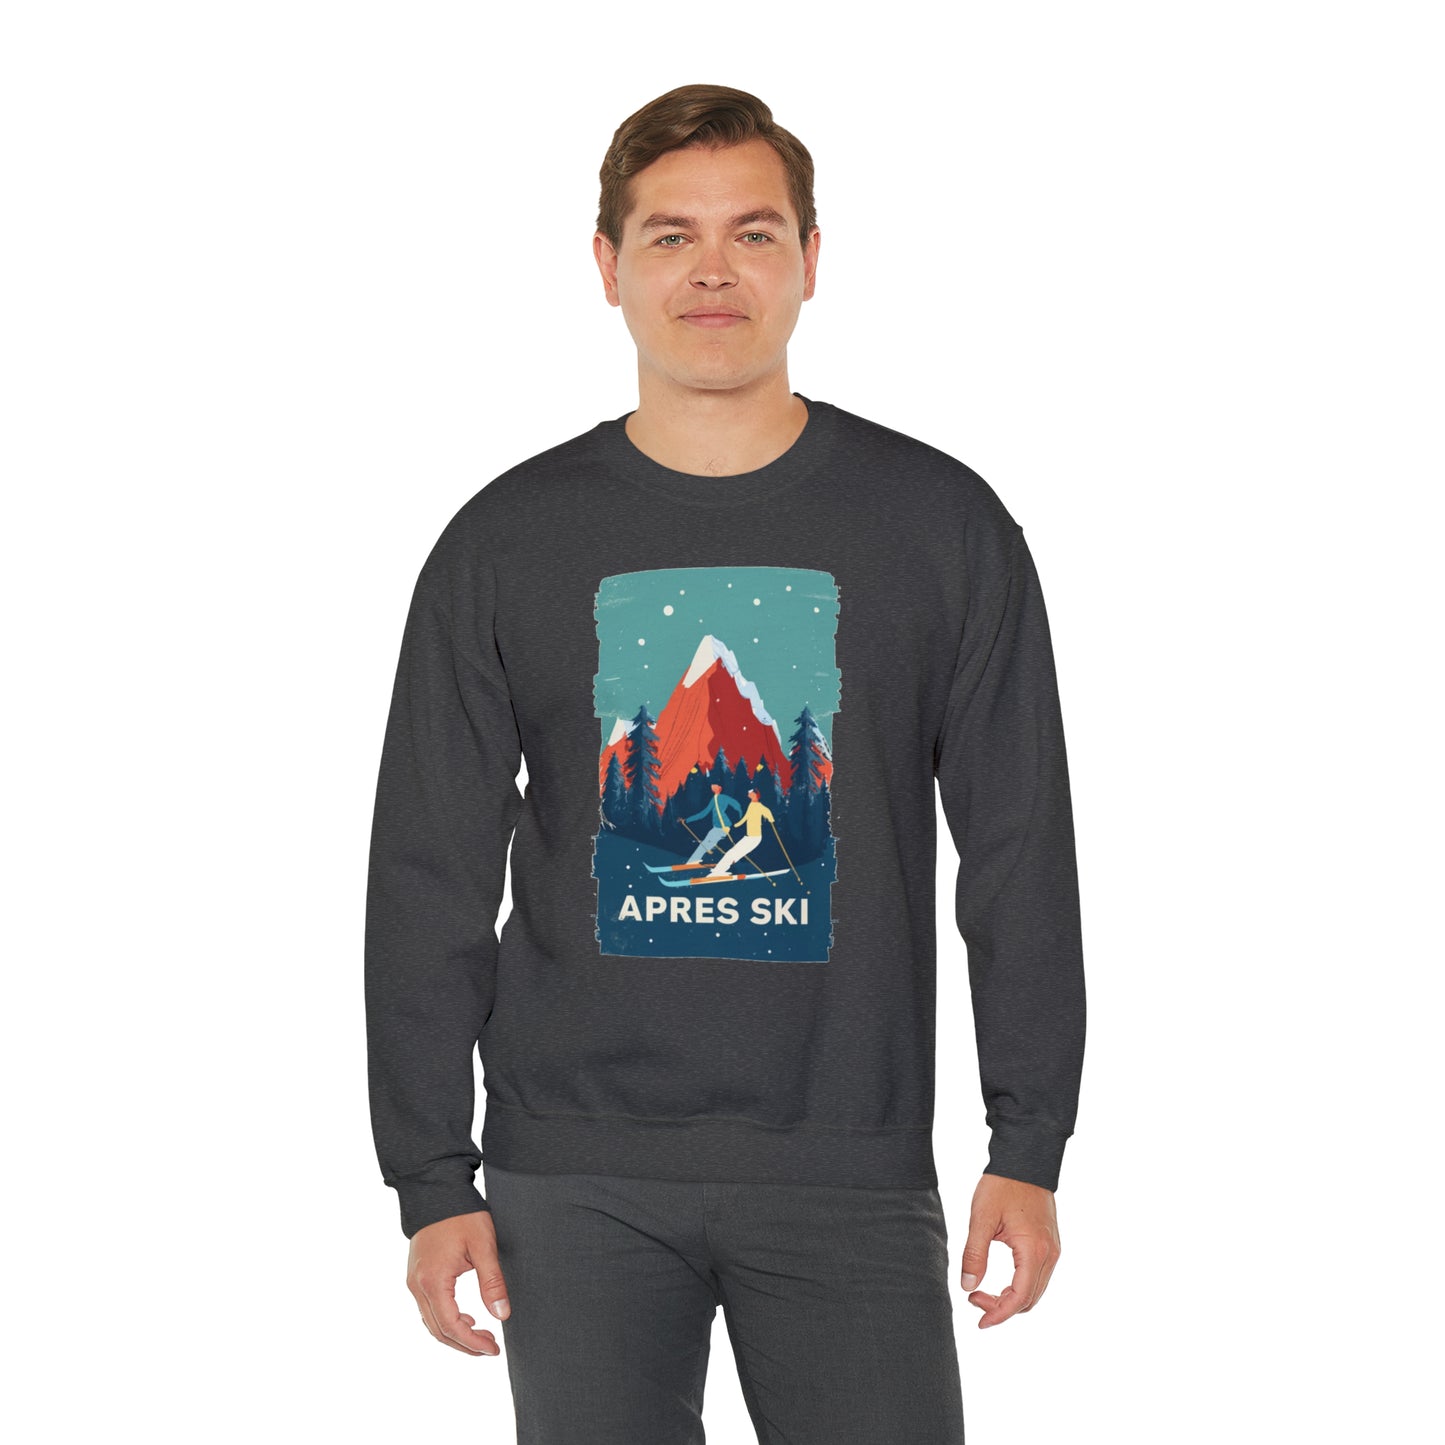 Apres Ski Sweatshirt, Mountain Skiing Graphic Crewneck Fleece Cotton Sweater Jumper Pullover Men Women Adult Aesthetic Designer Top